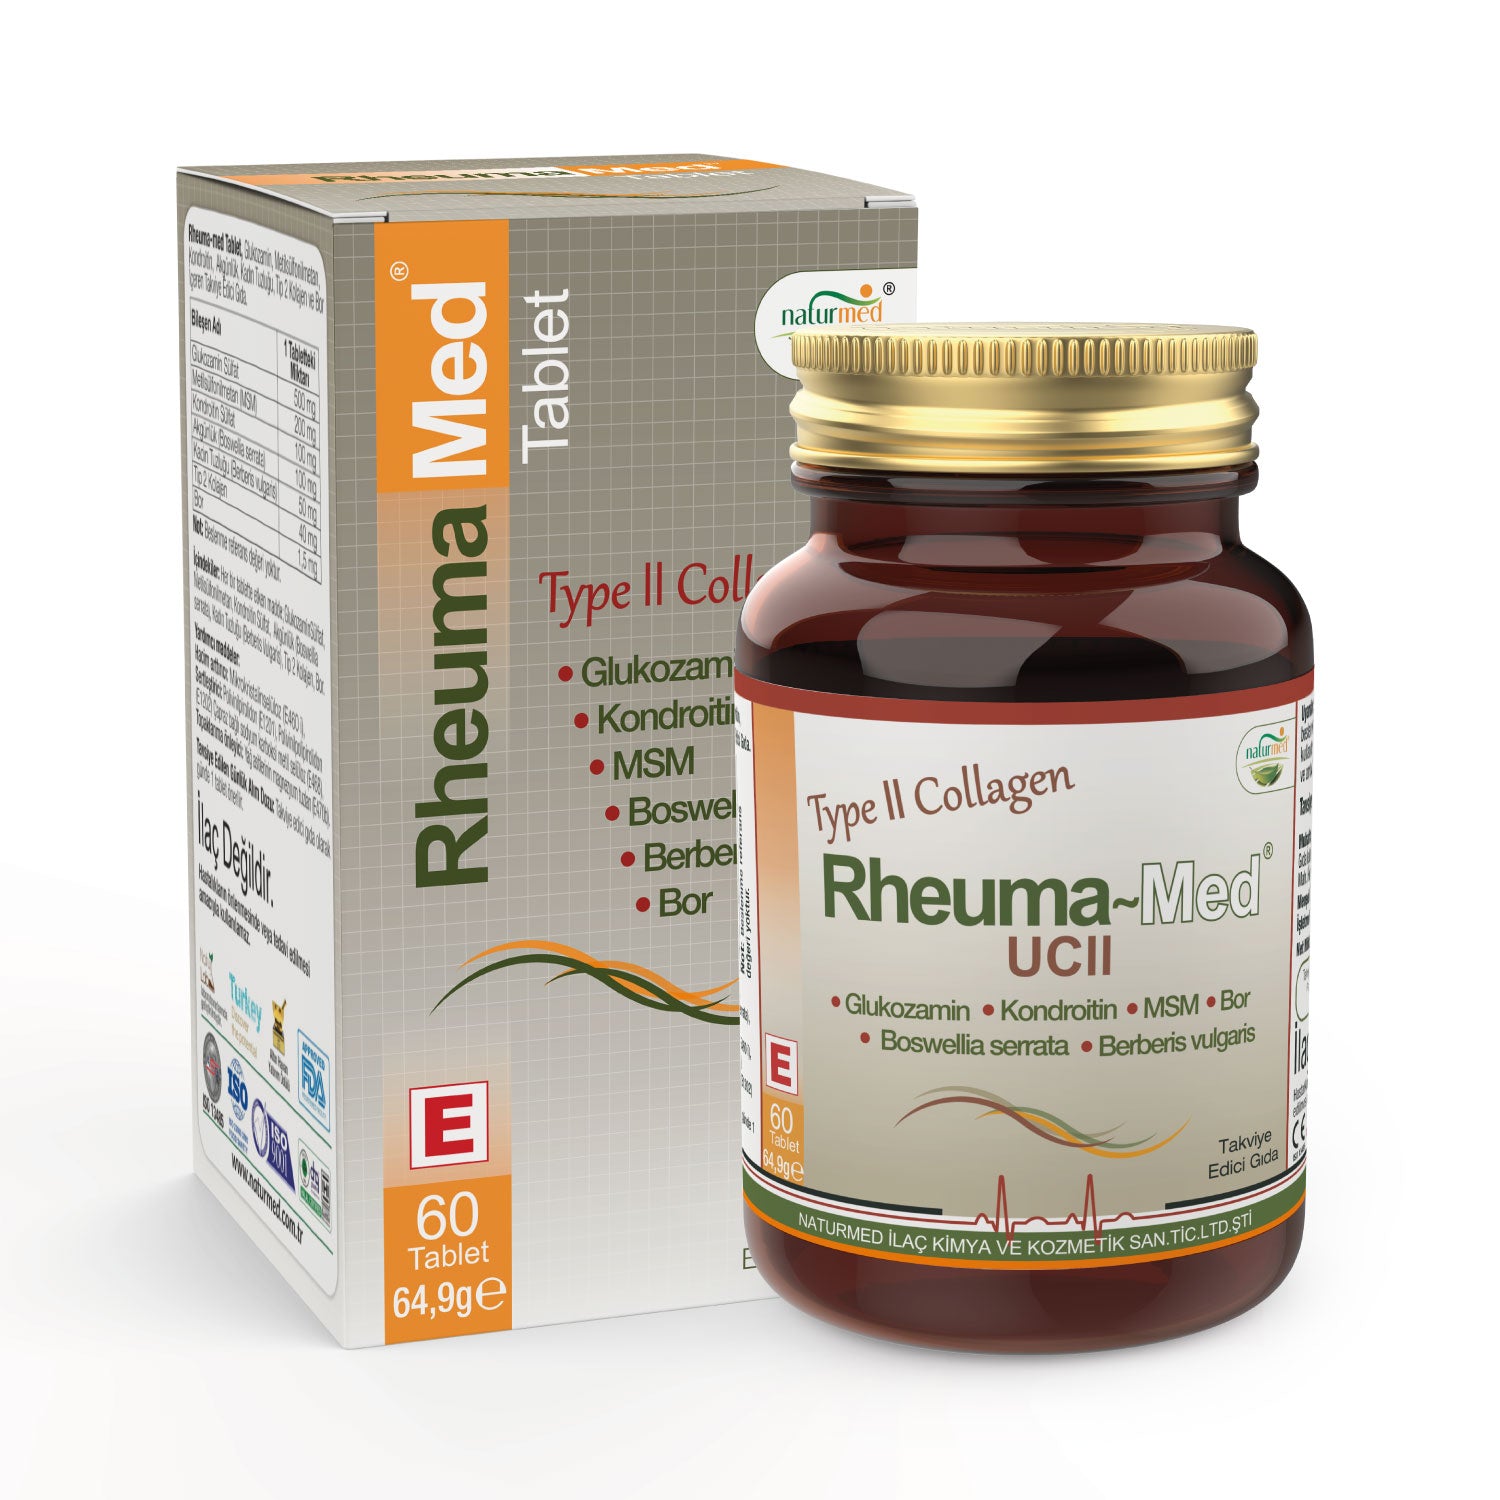 Rheuma-Med® UCII Tablet